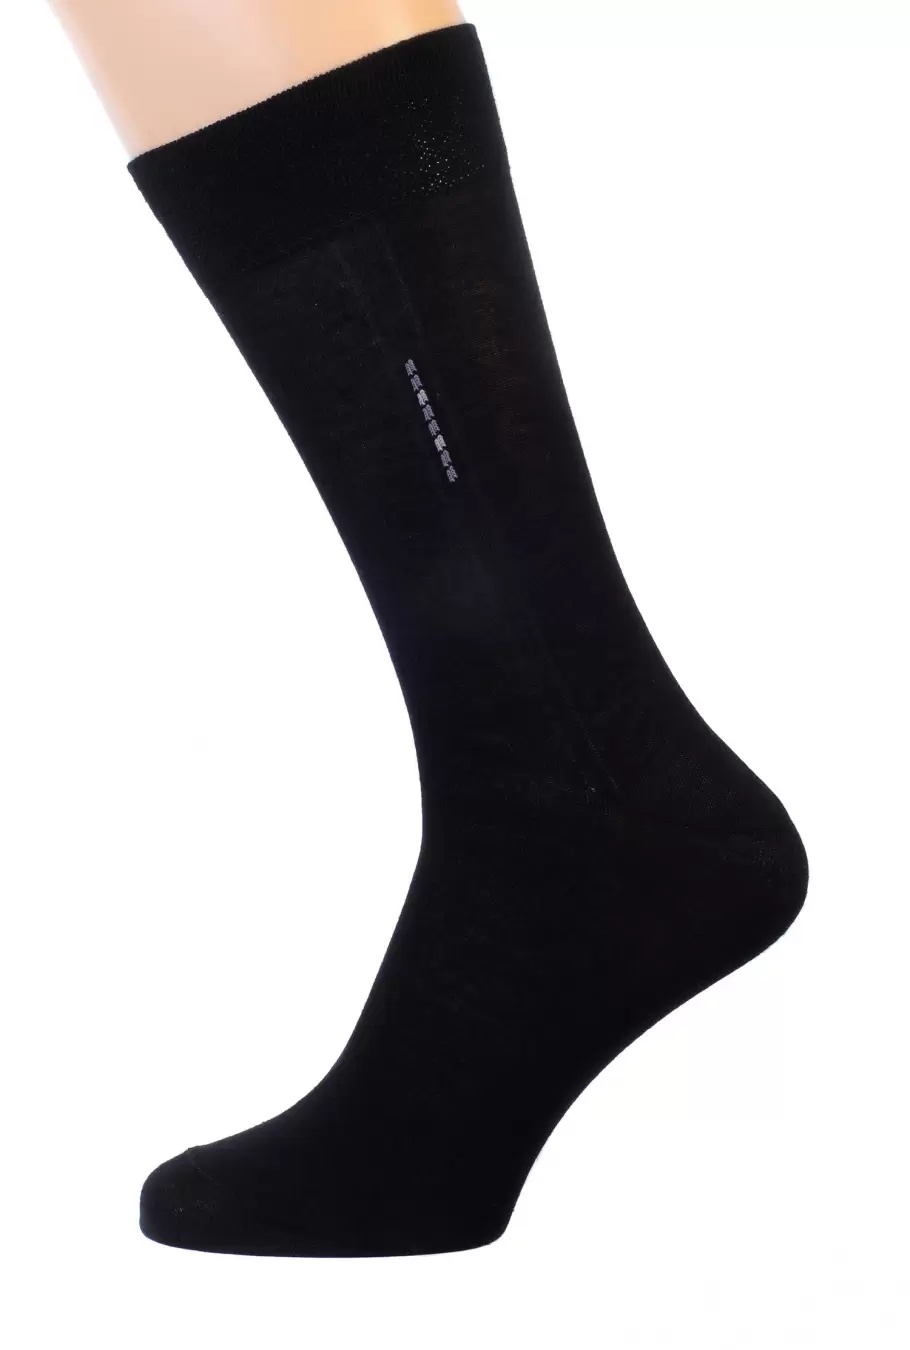 Pingons 6А9, мужские носки (изображение 1)